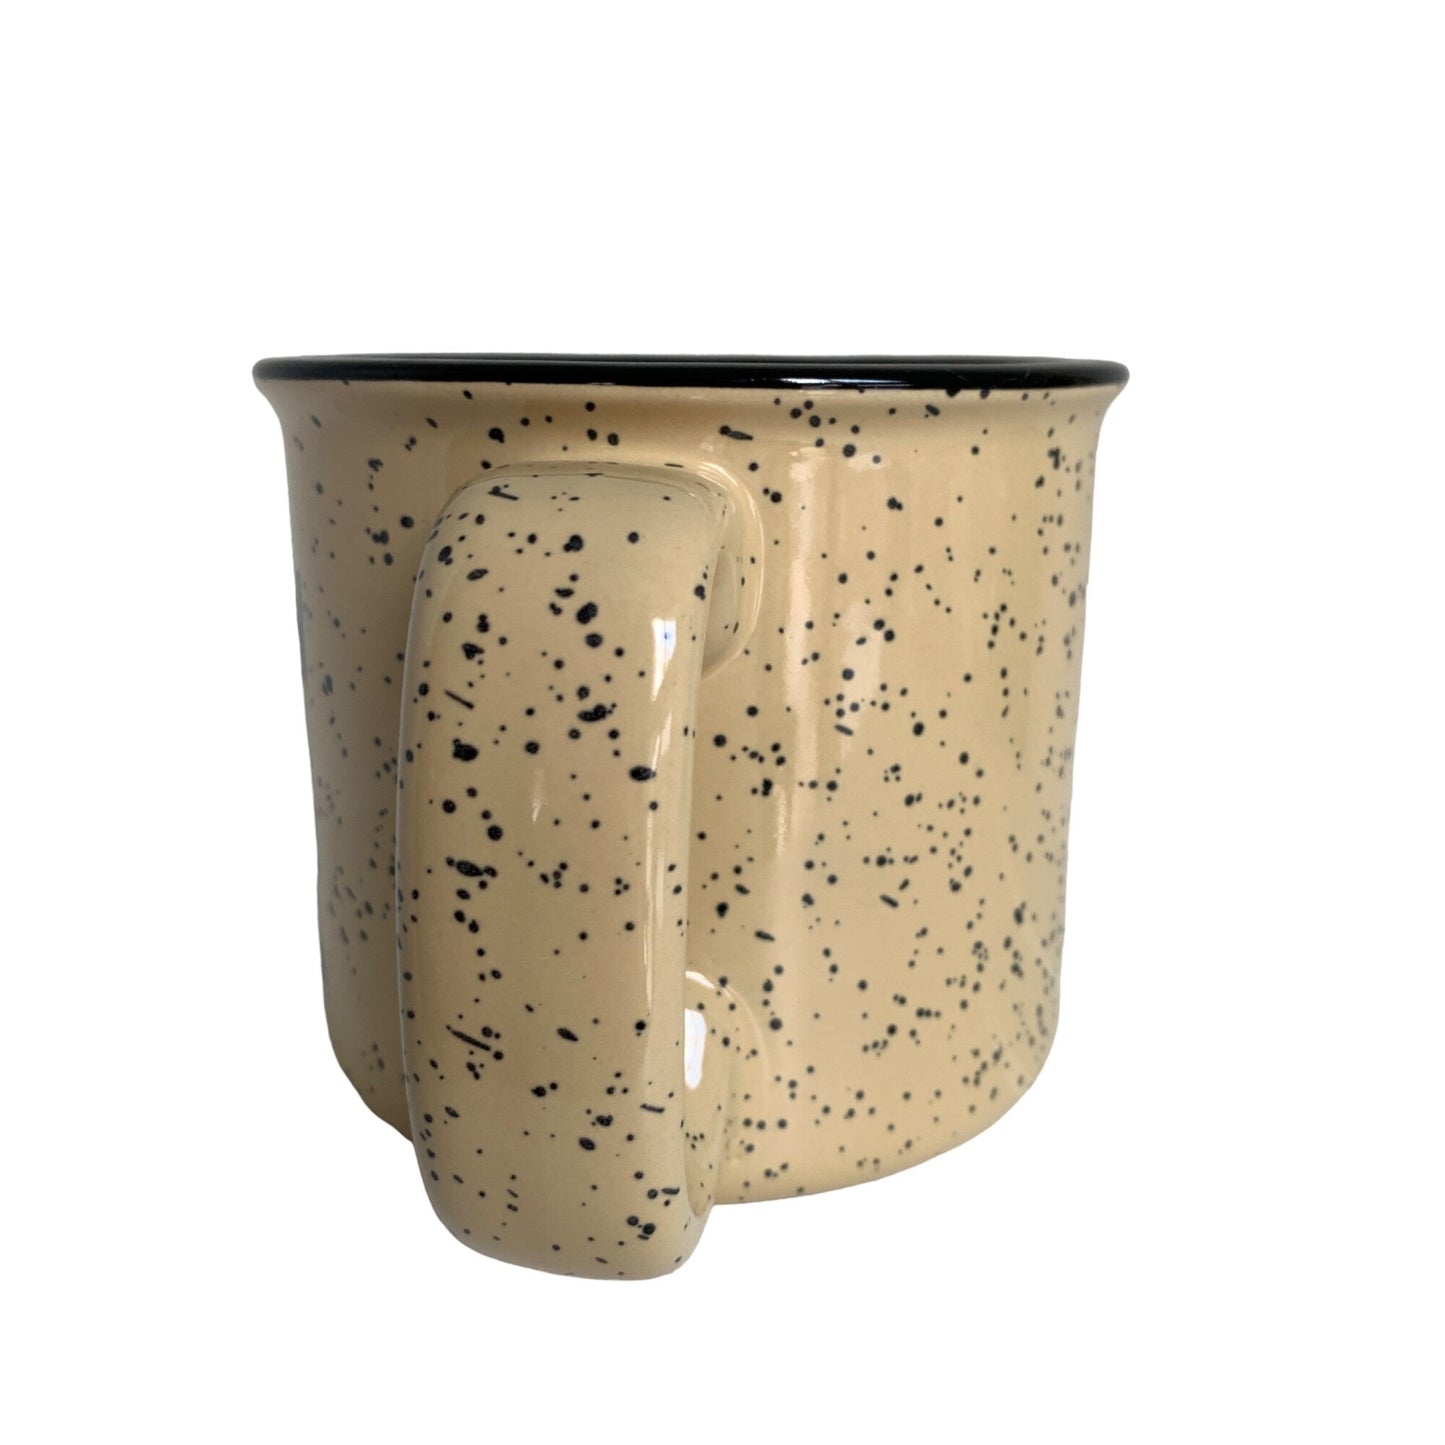 Vermilion Ely Minnesota Speckled Camp Ceramic Mug